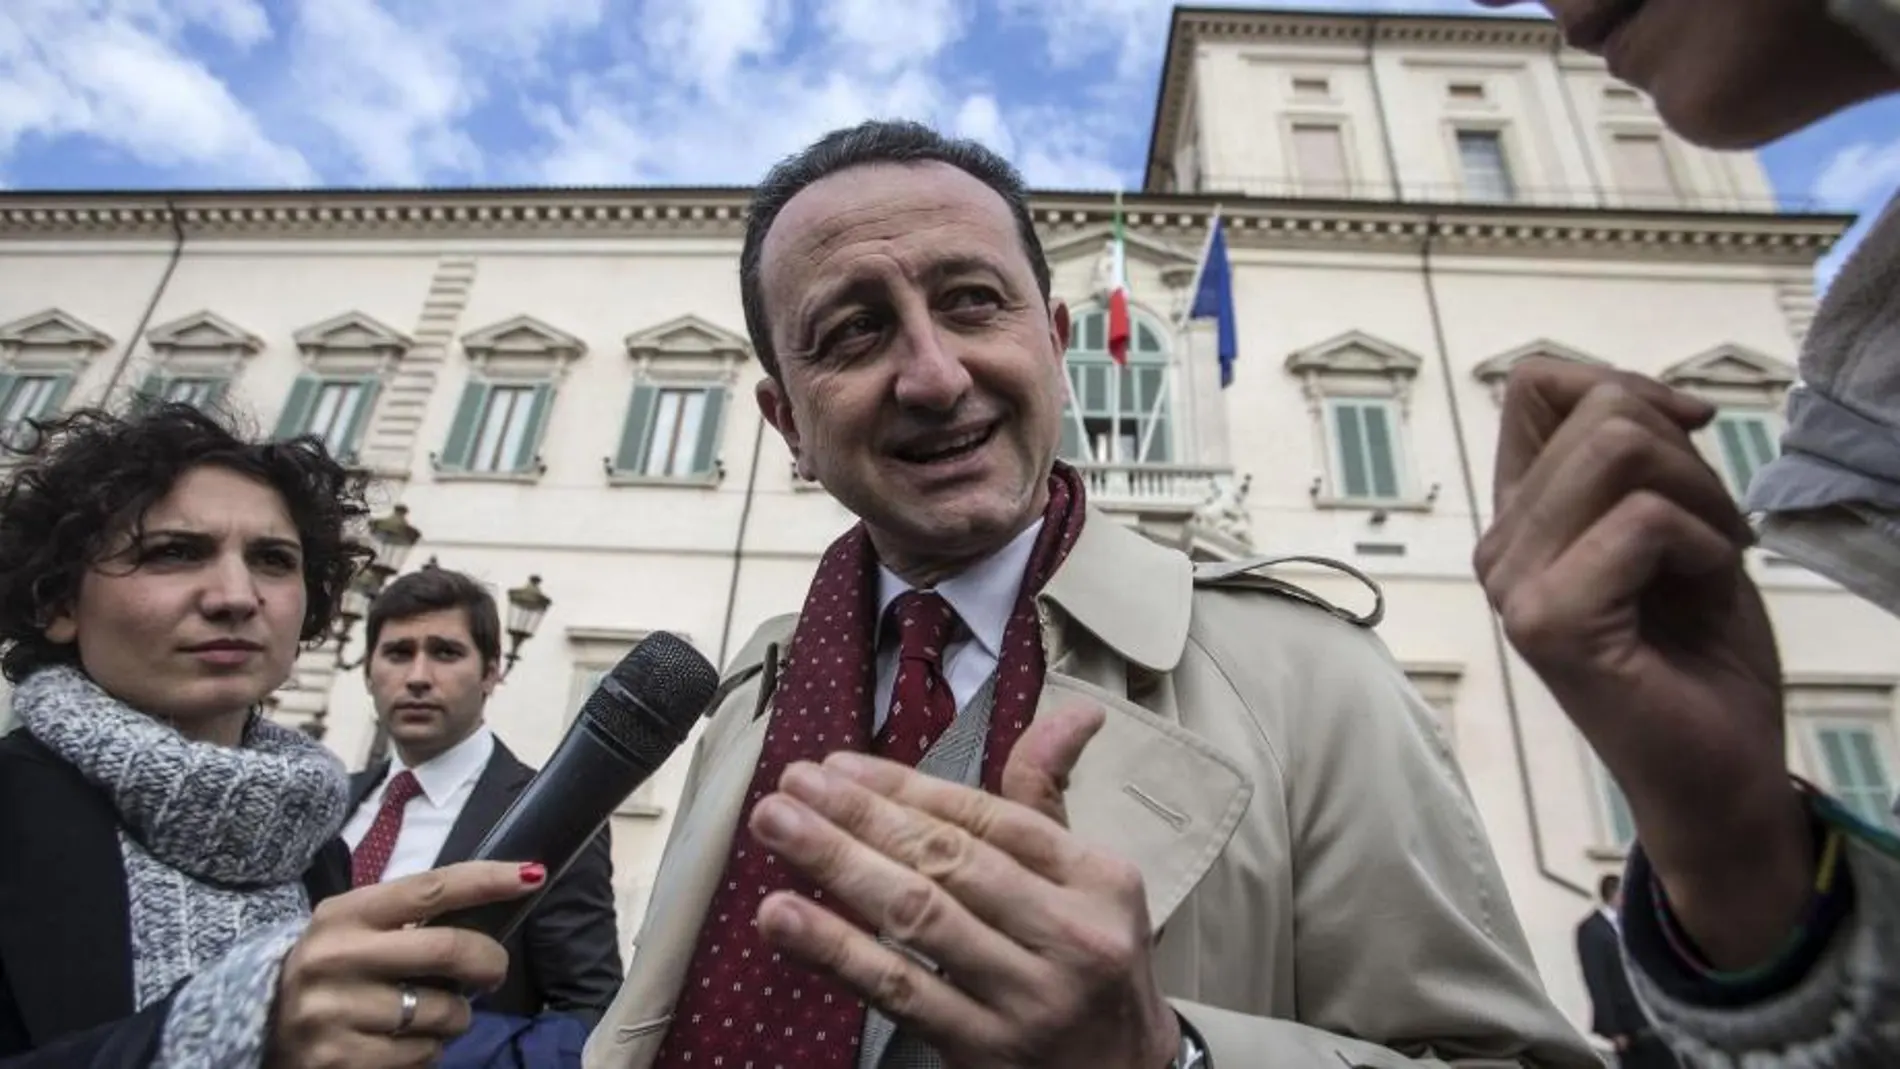 Luca Cianferoni, abogado del sanguinario jefe de Cosa Nostra, Toto Riina, se dirige a los medios tras abandonar el Quirinale